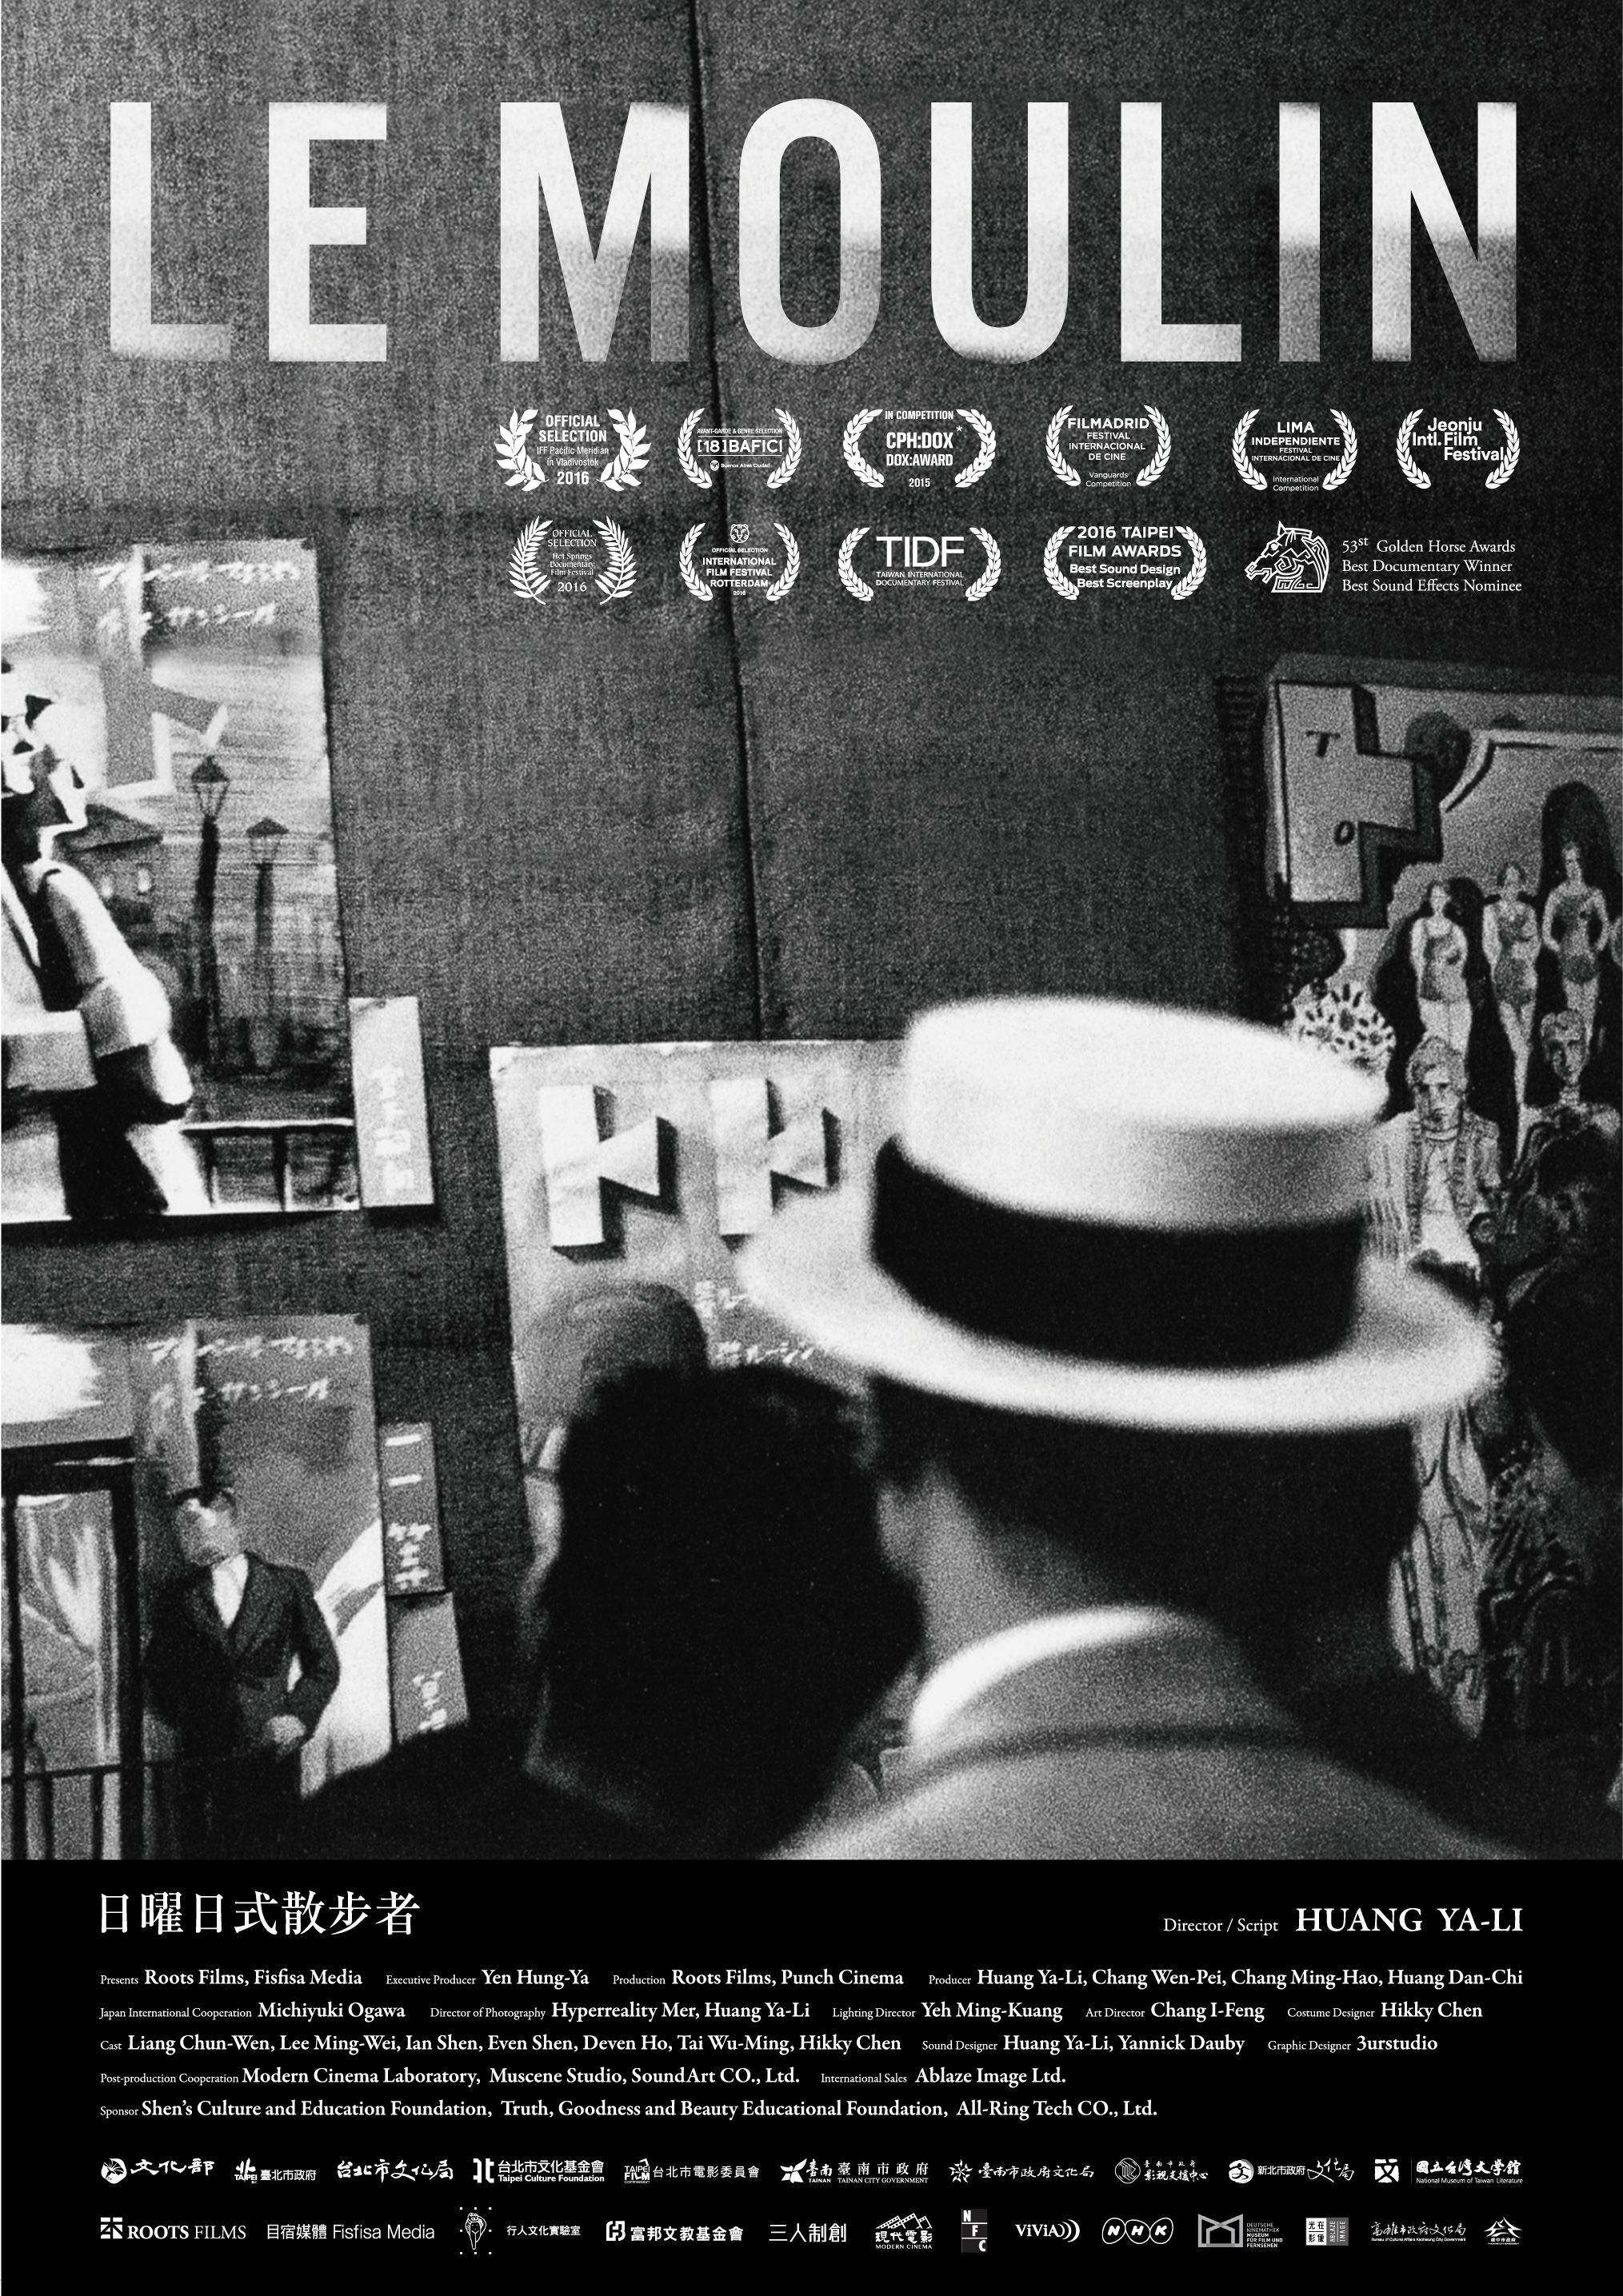 Taiwan cosmopolite : projection du film documentaire Le Moulin et conférences autour du film